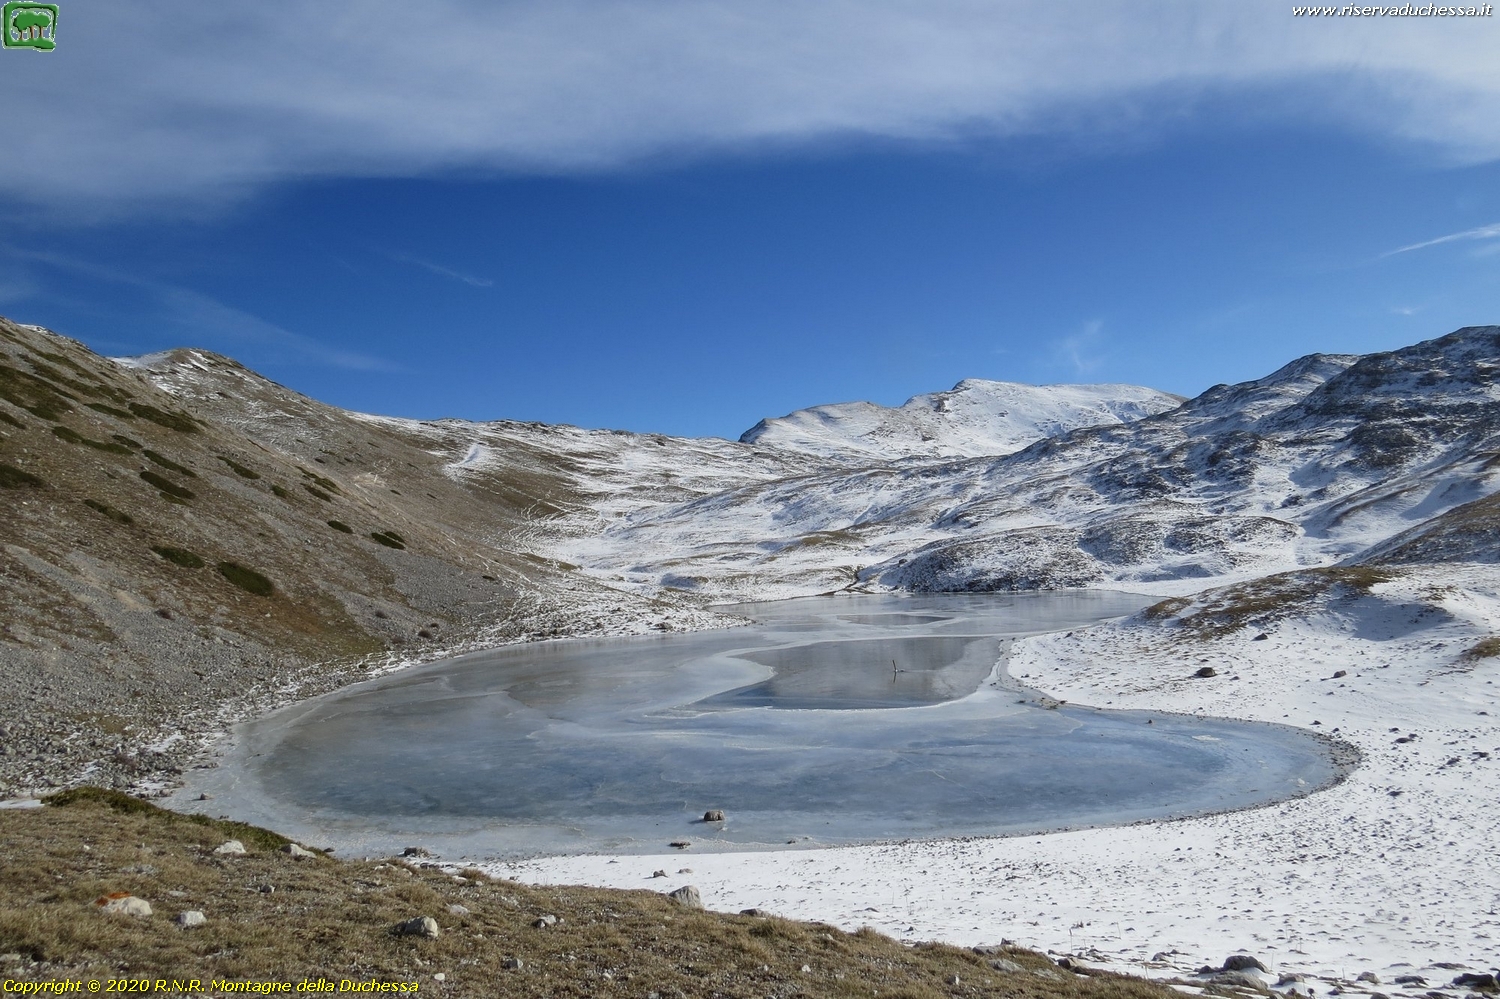 4b. 03 gennaio 2020, il lago ghiacciato con poca neve ad imbiancare le praterie circostanti